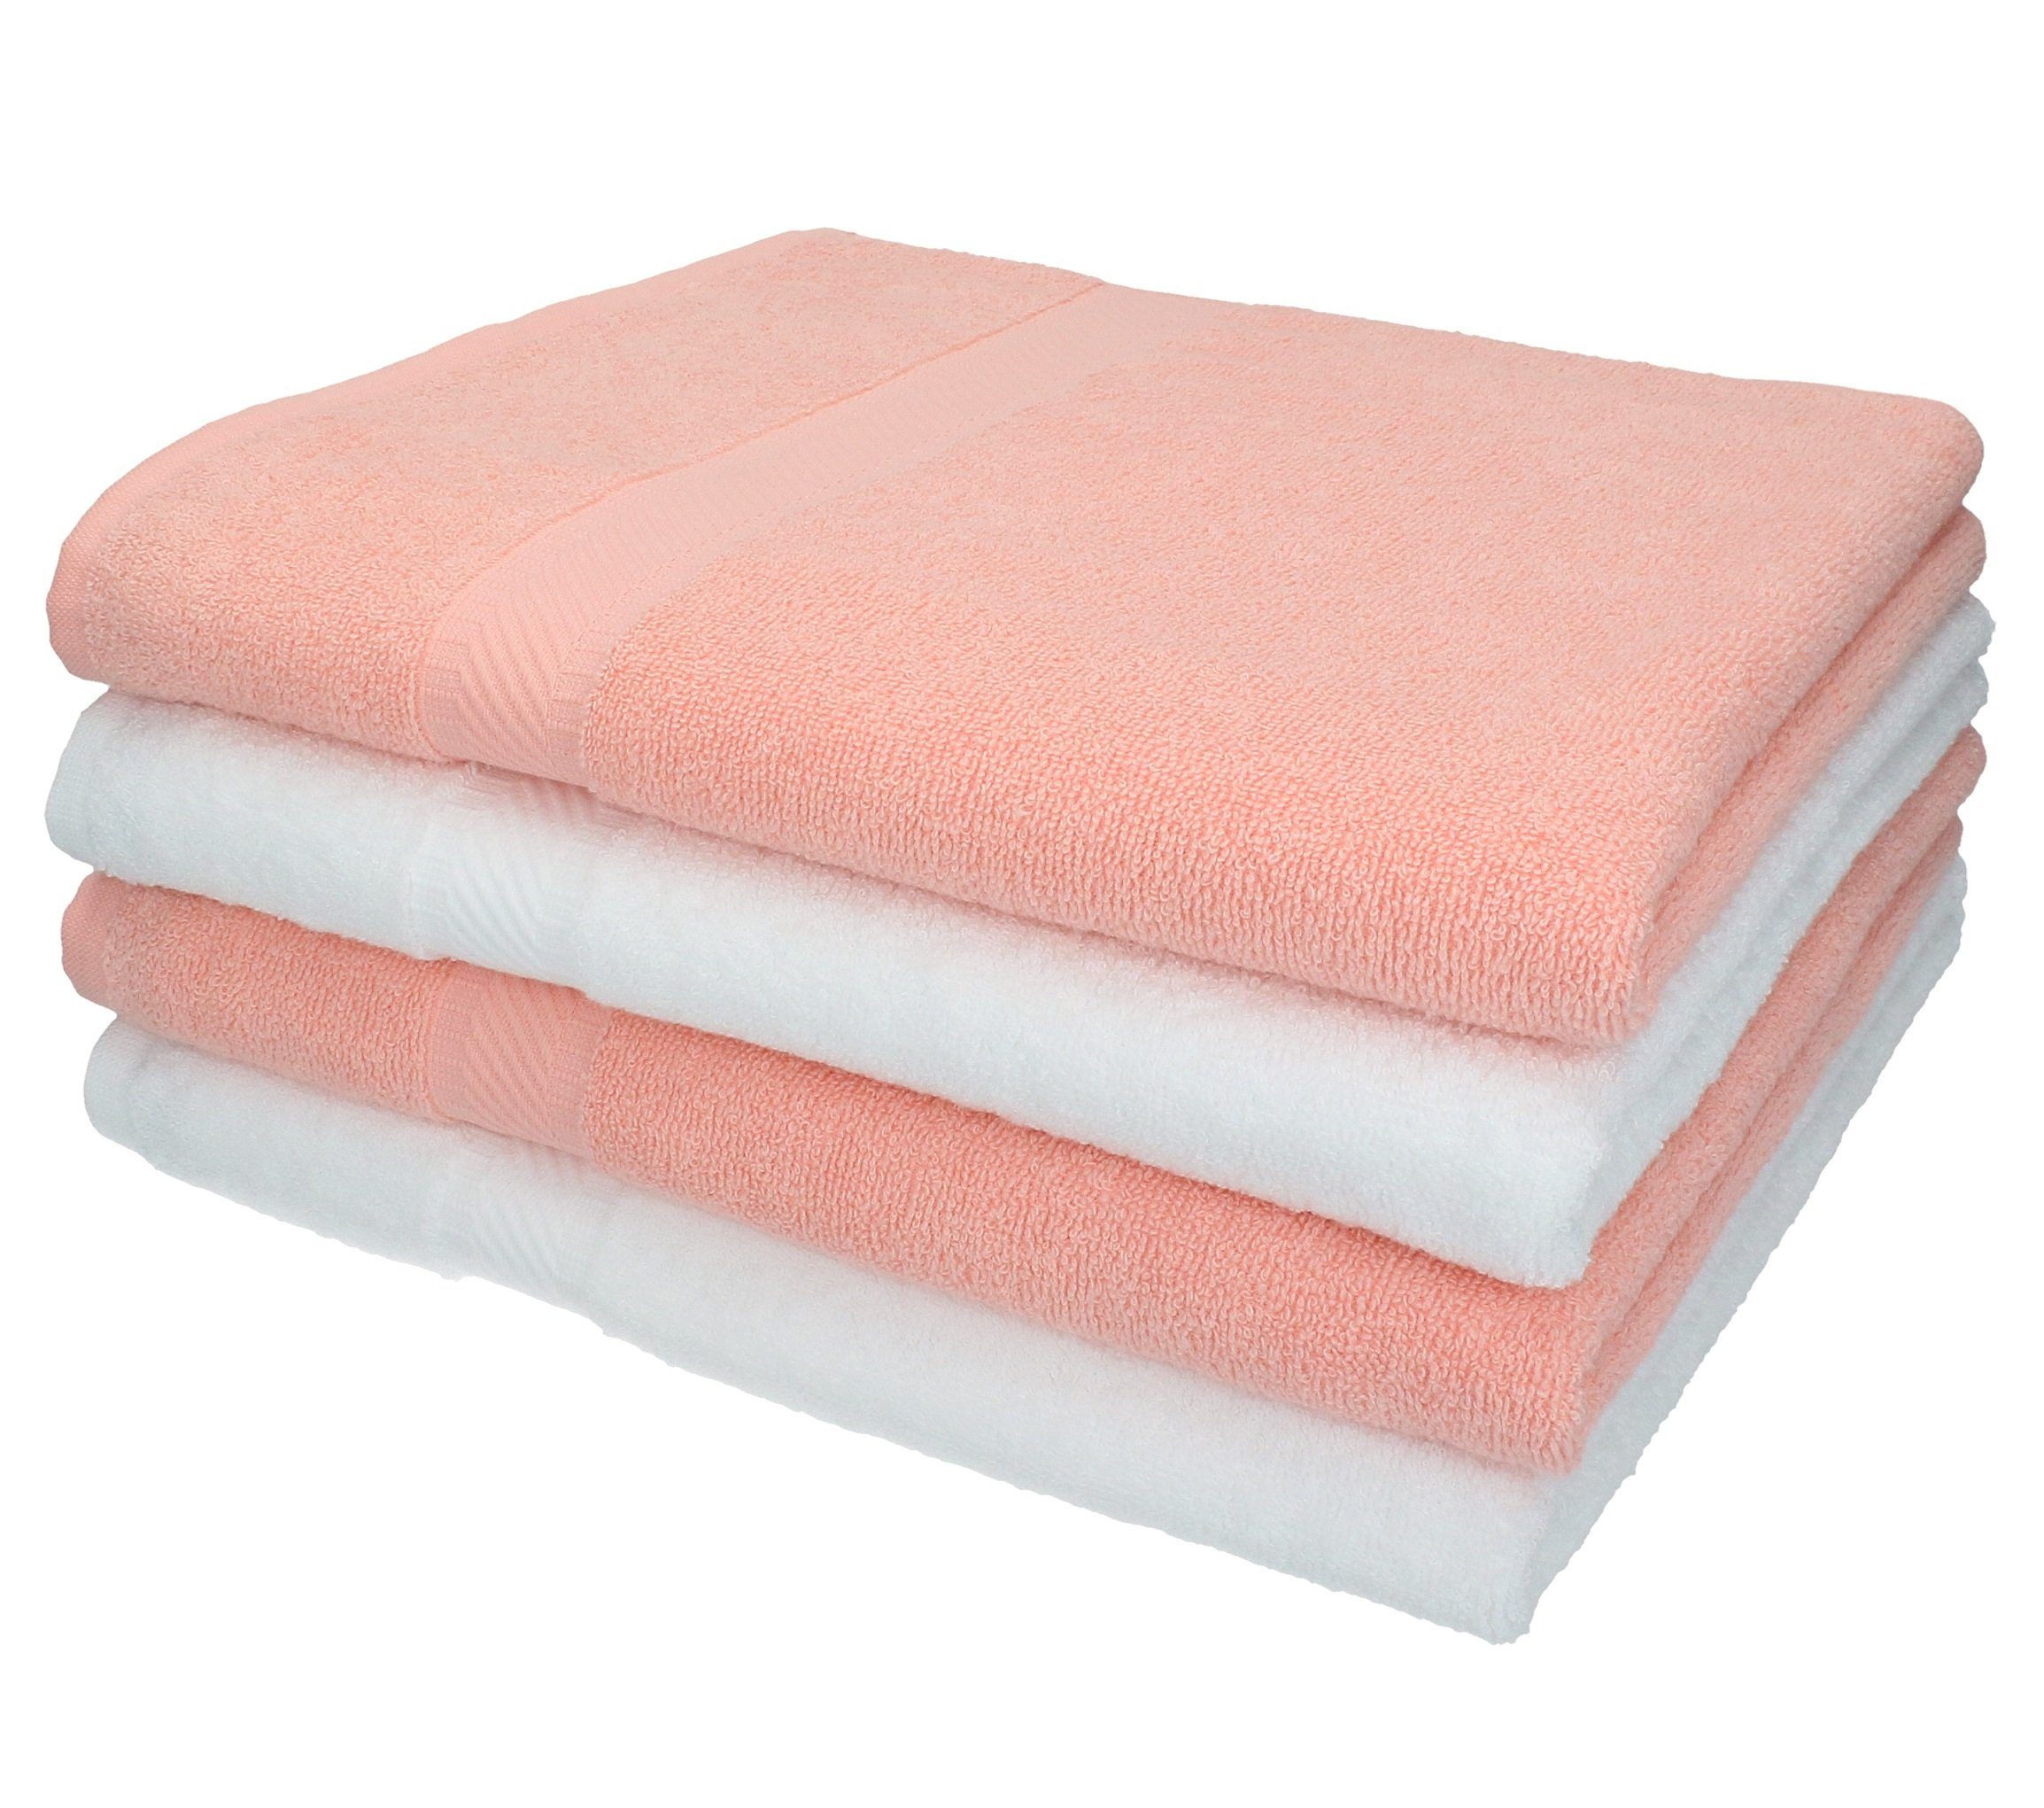 Betz Duschtücher 4 Stück Duschtücher Palermo 100% Baumwolle Duschtuch-Set Farbe weiß und apricot, 100% Baumwolle | Badetücher